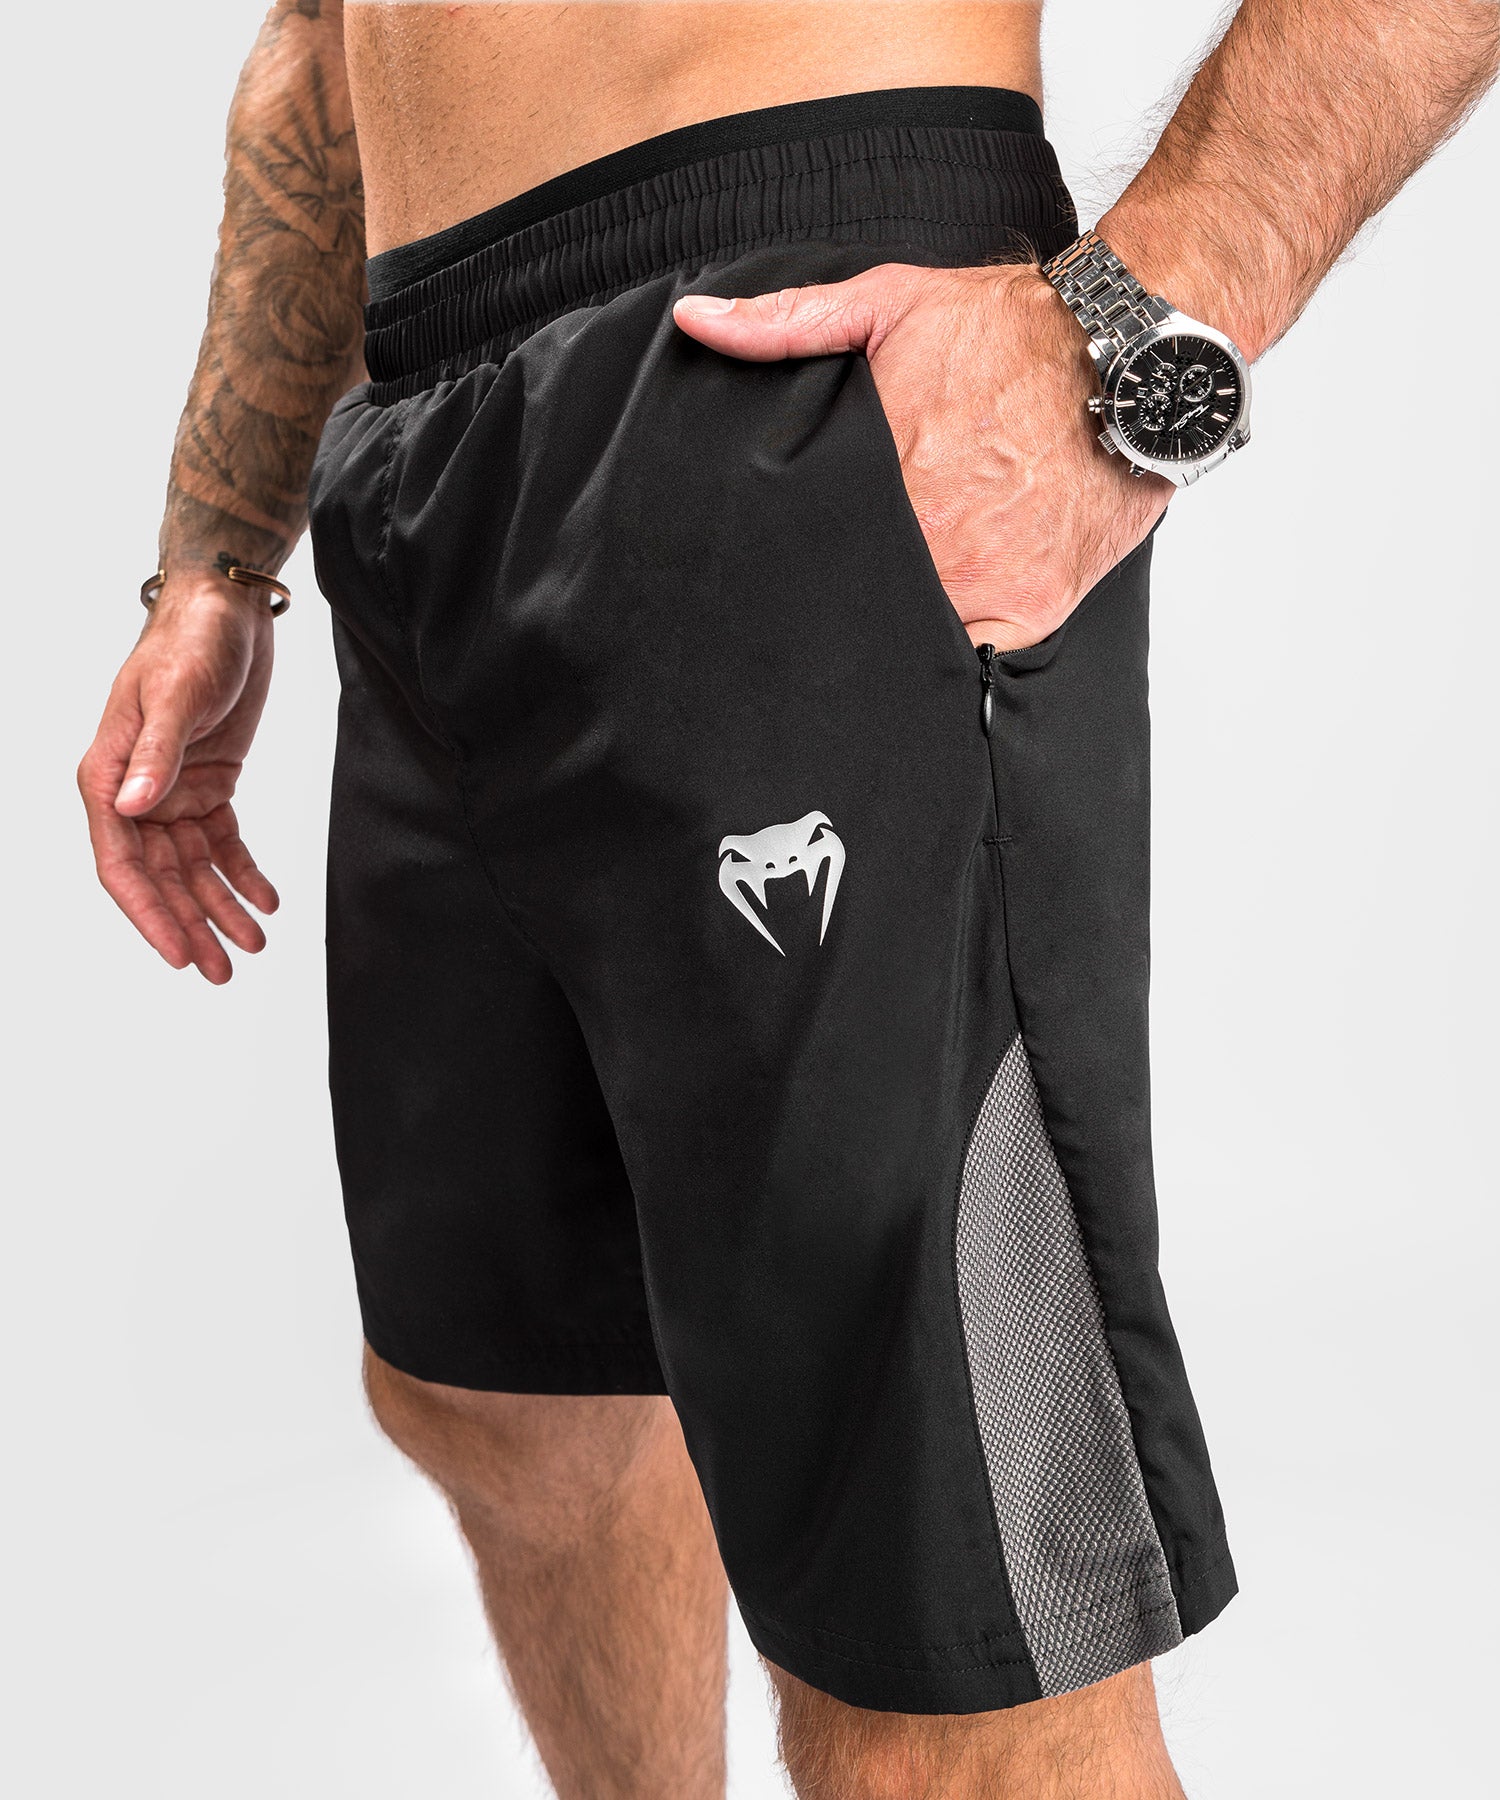 Pantalones cortos de entrenamiento hombres – Venum España